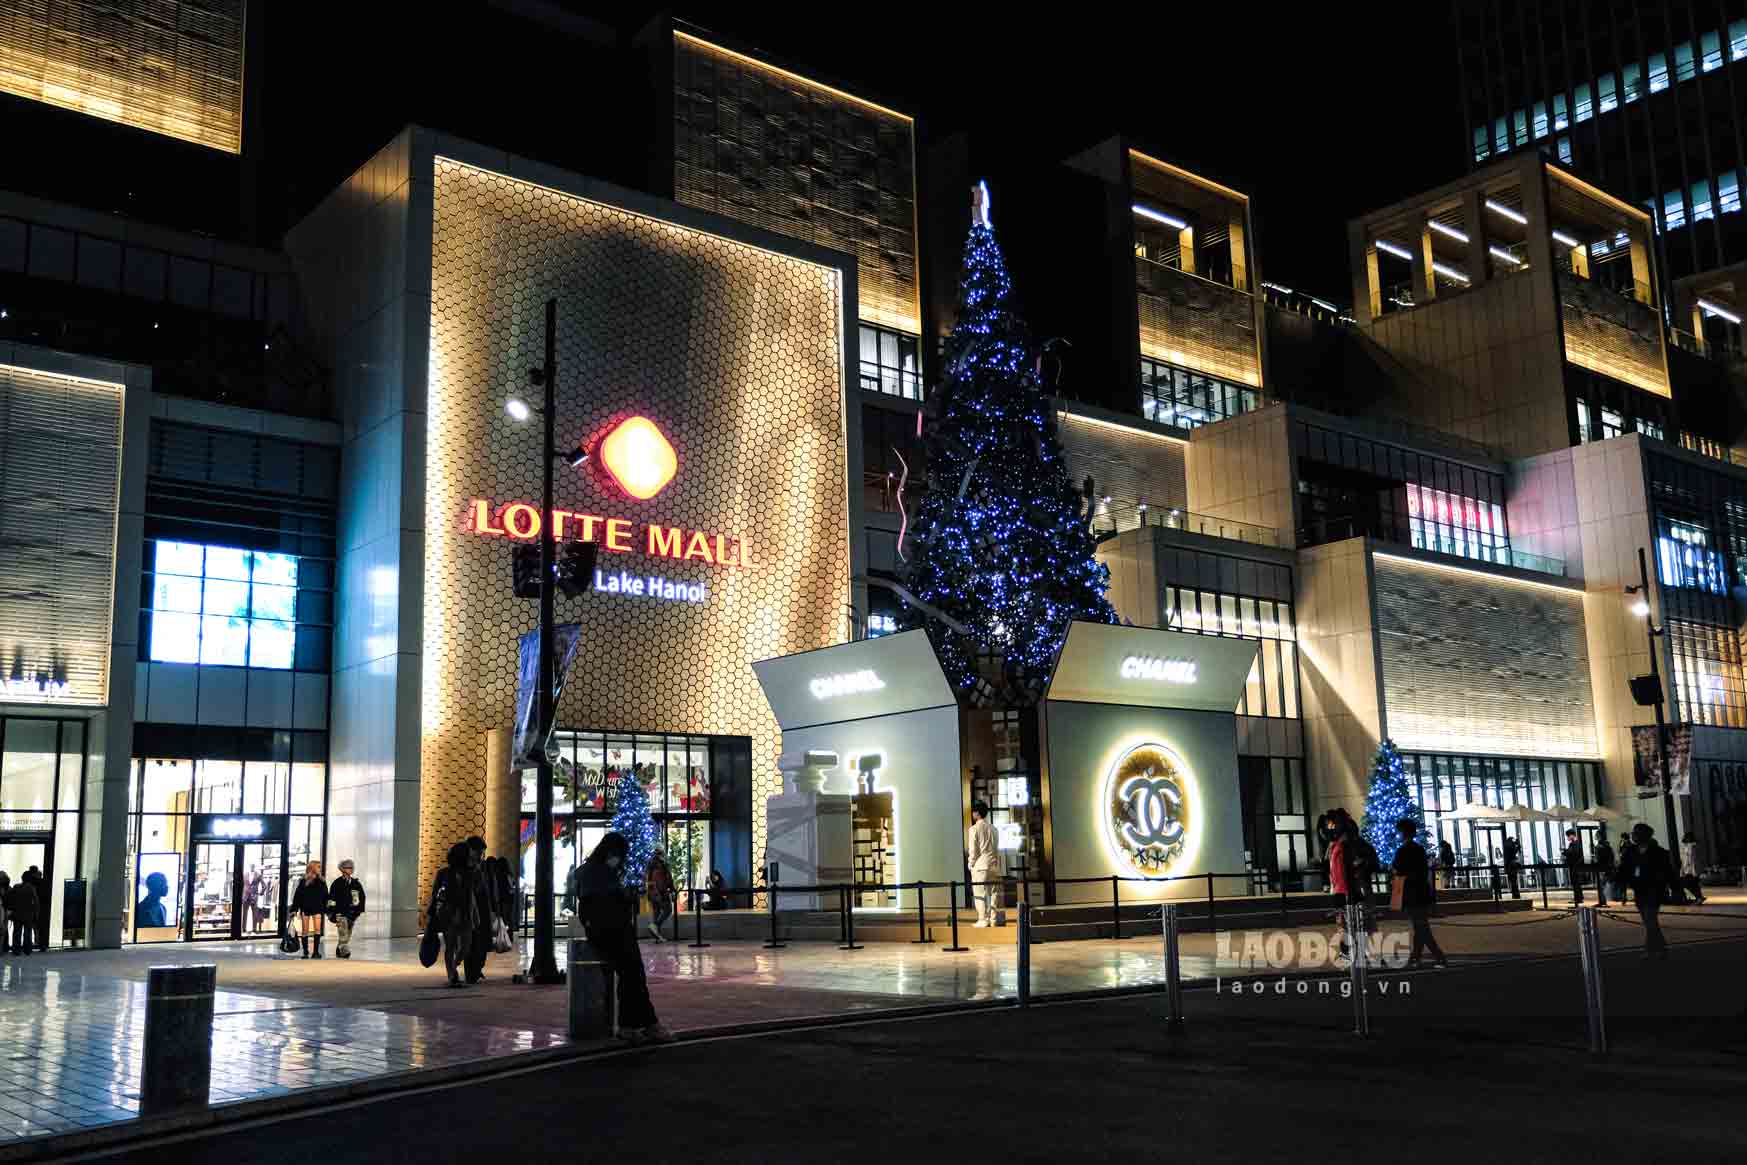 Tại Lotte mall Tây Hồ đã trang trí Giáng sinh sớm nhất tại Hà Nội. Cây thông được trưng bày nổi bật ngay trước sảnh toà nhà thu hút tất cả du khách khi tới đây mua sắm.